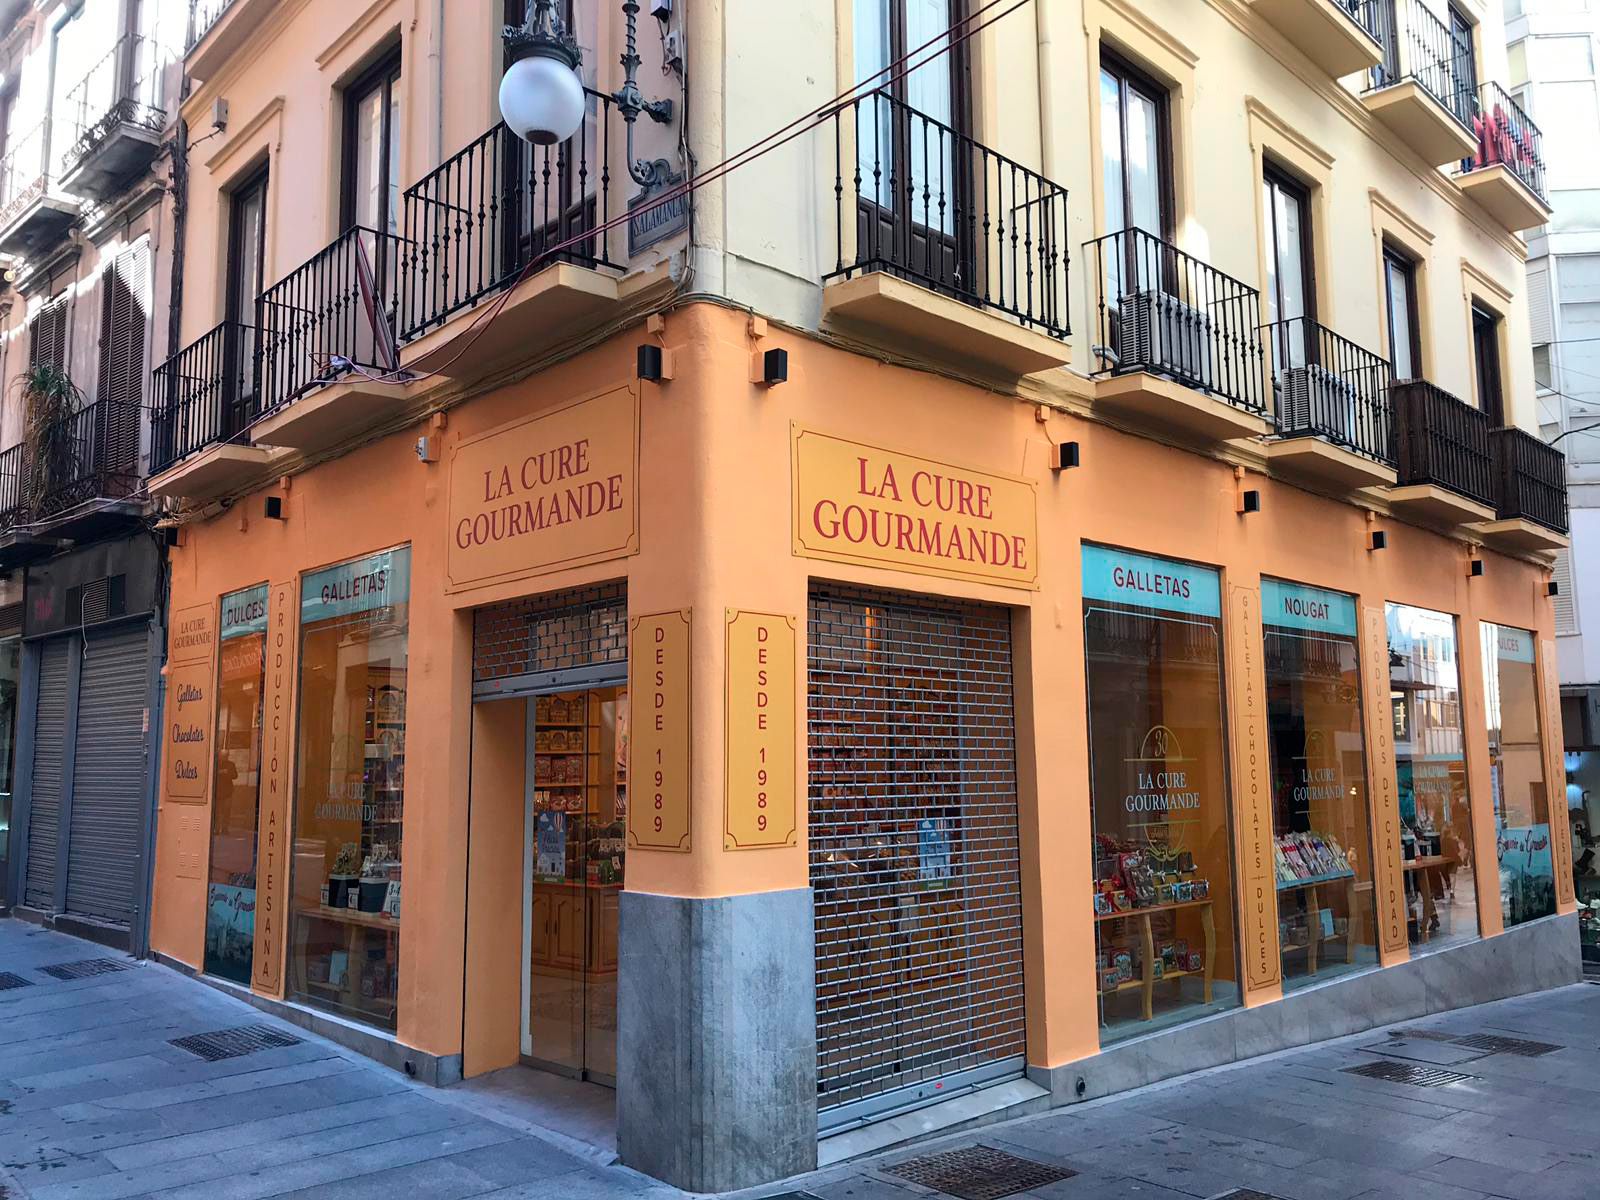 Alquiler Inmuebles. INMOBILIARIA MASEGOSA en Granada